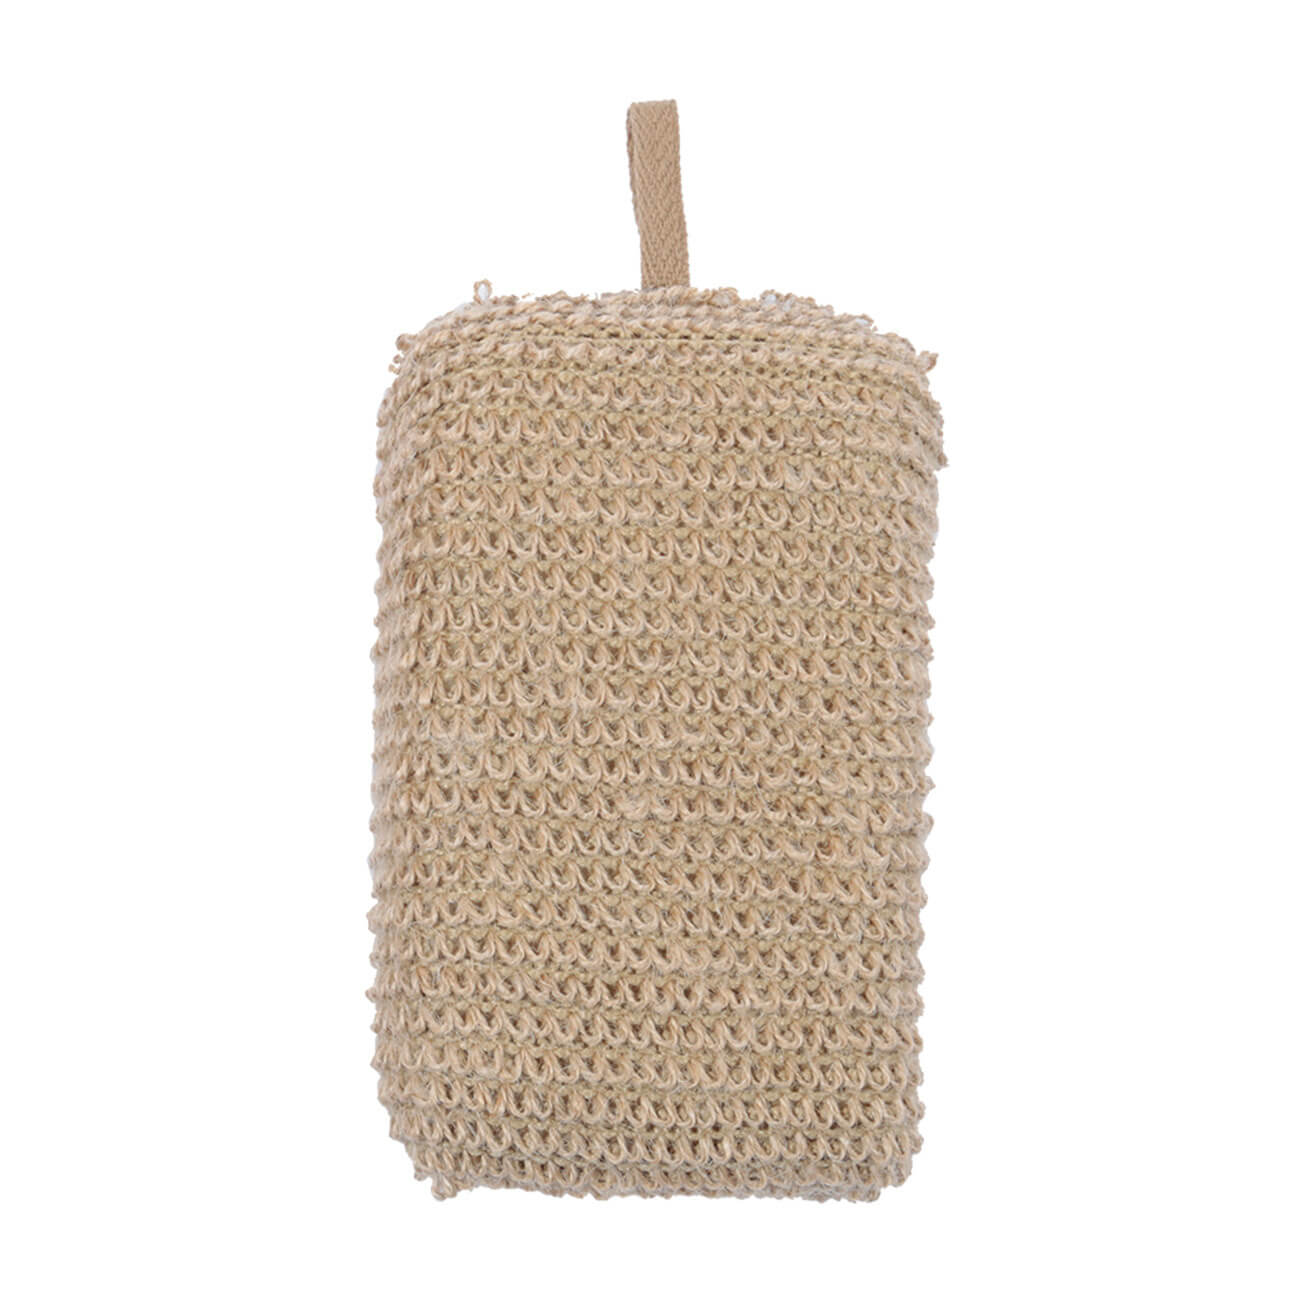 Мочалка-губка для мытья тела, 9х14 см, конопляное волокно/полиуретан, бежевая, Eco life губка для тела tiamo